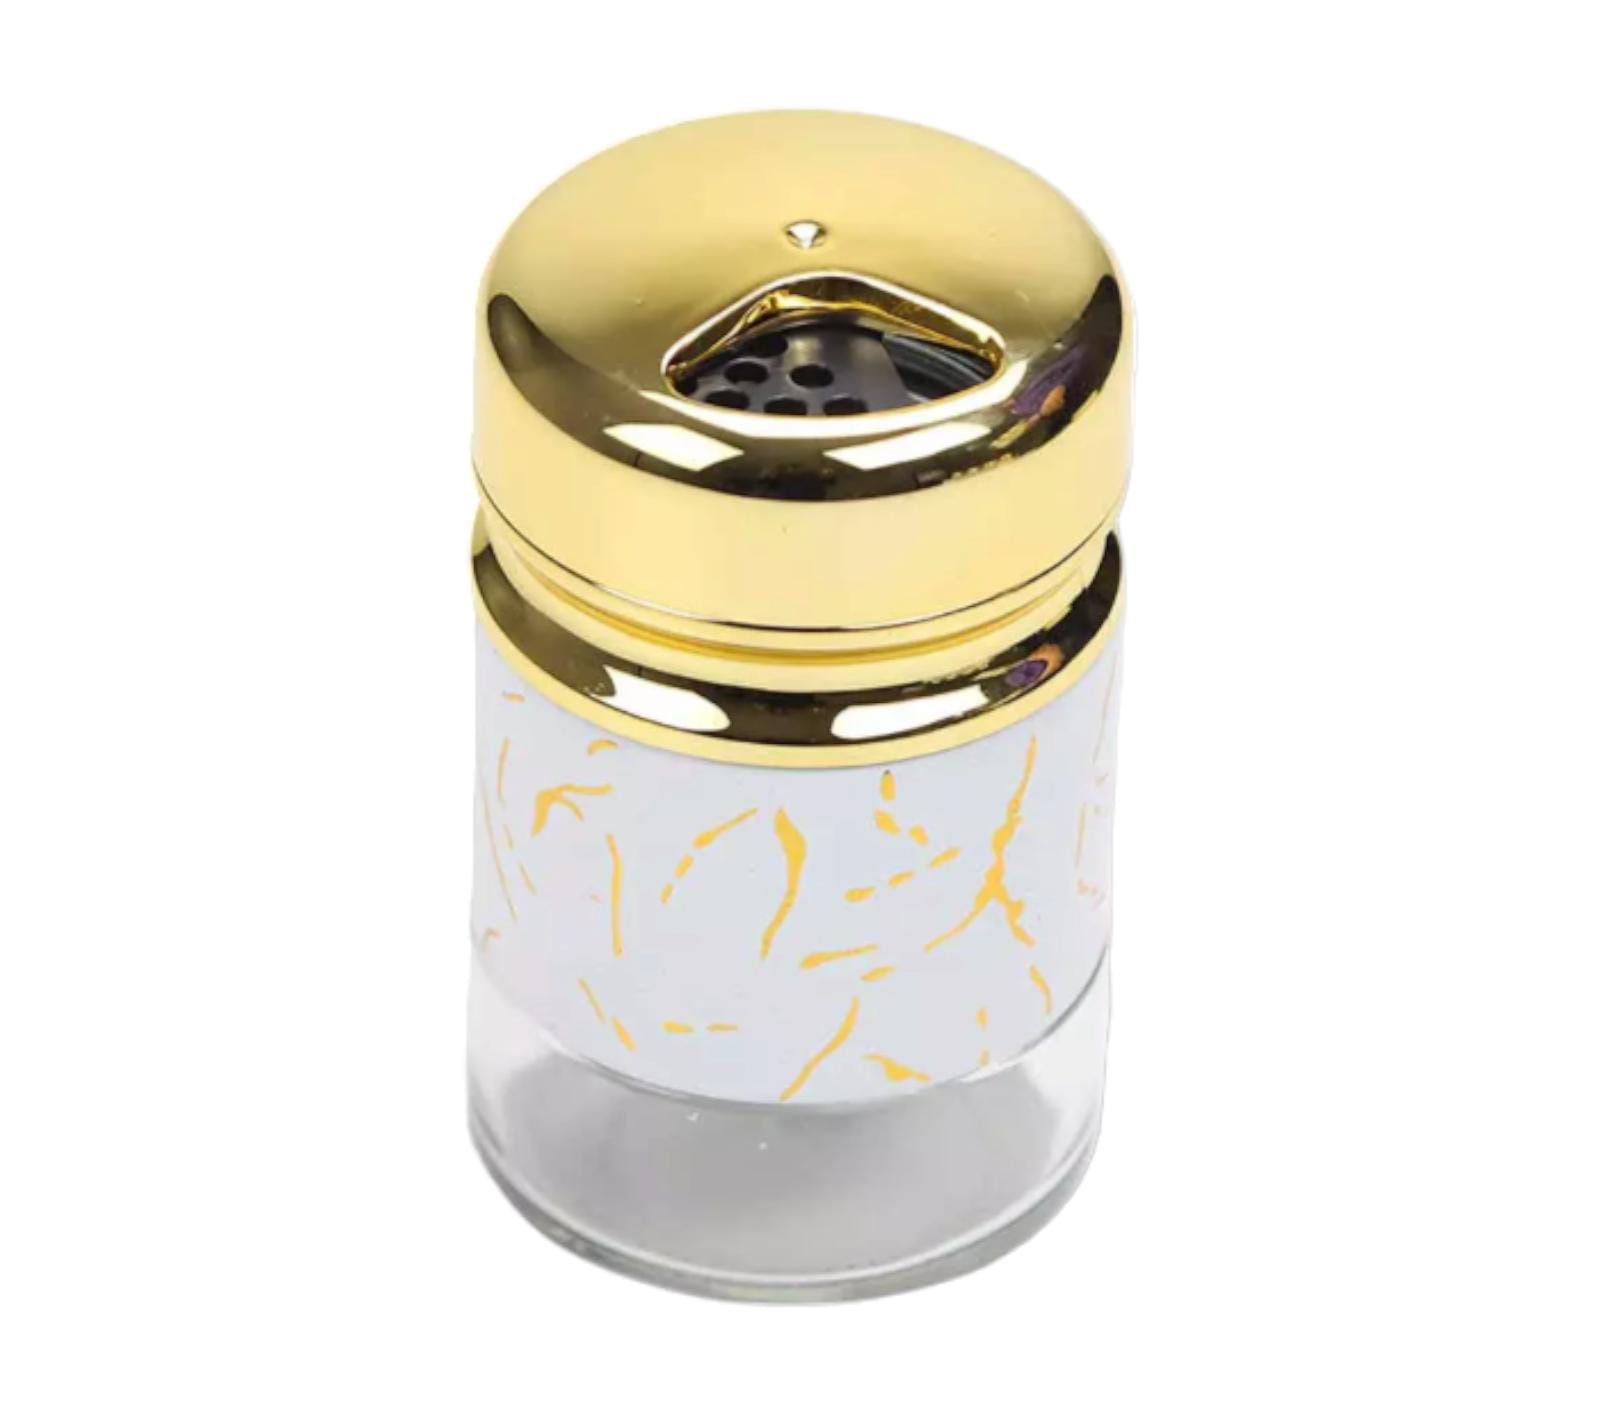 Salt And Spices Storage Jar